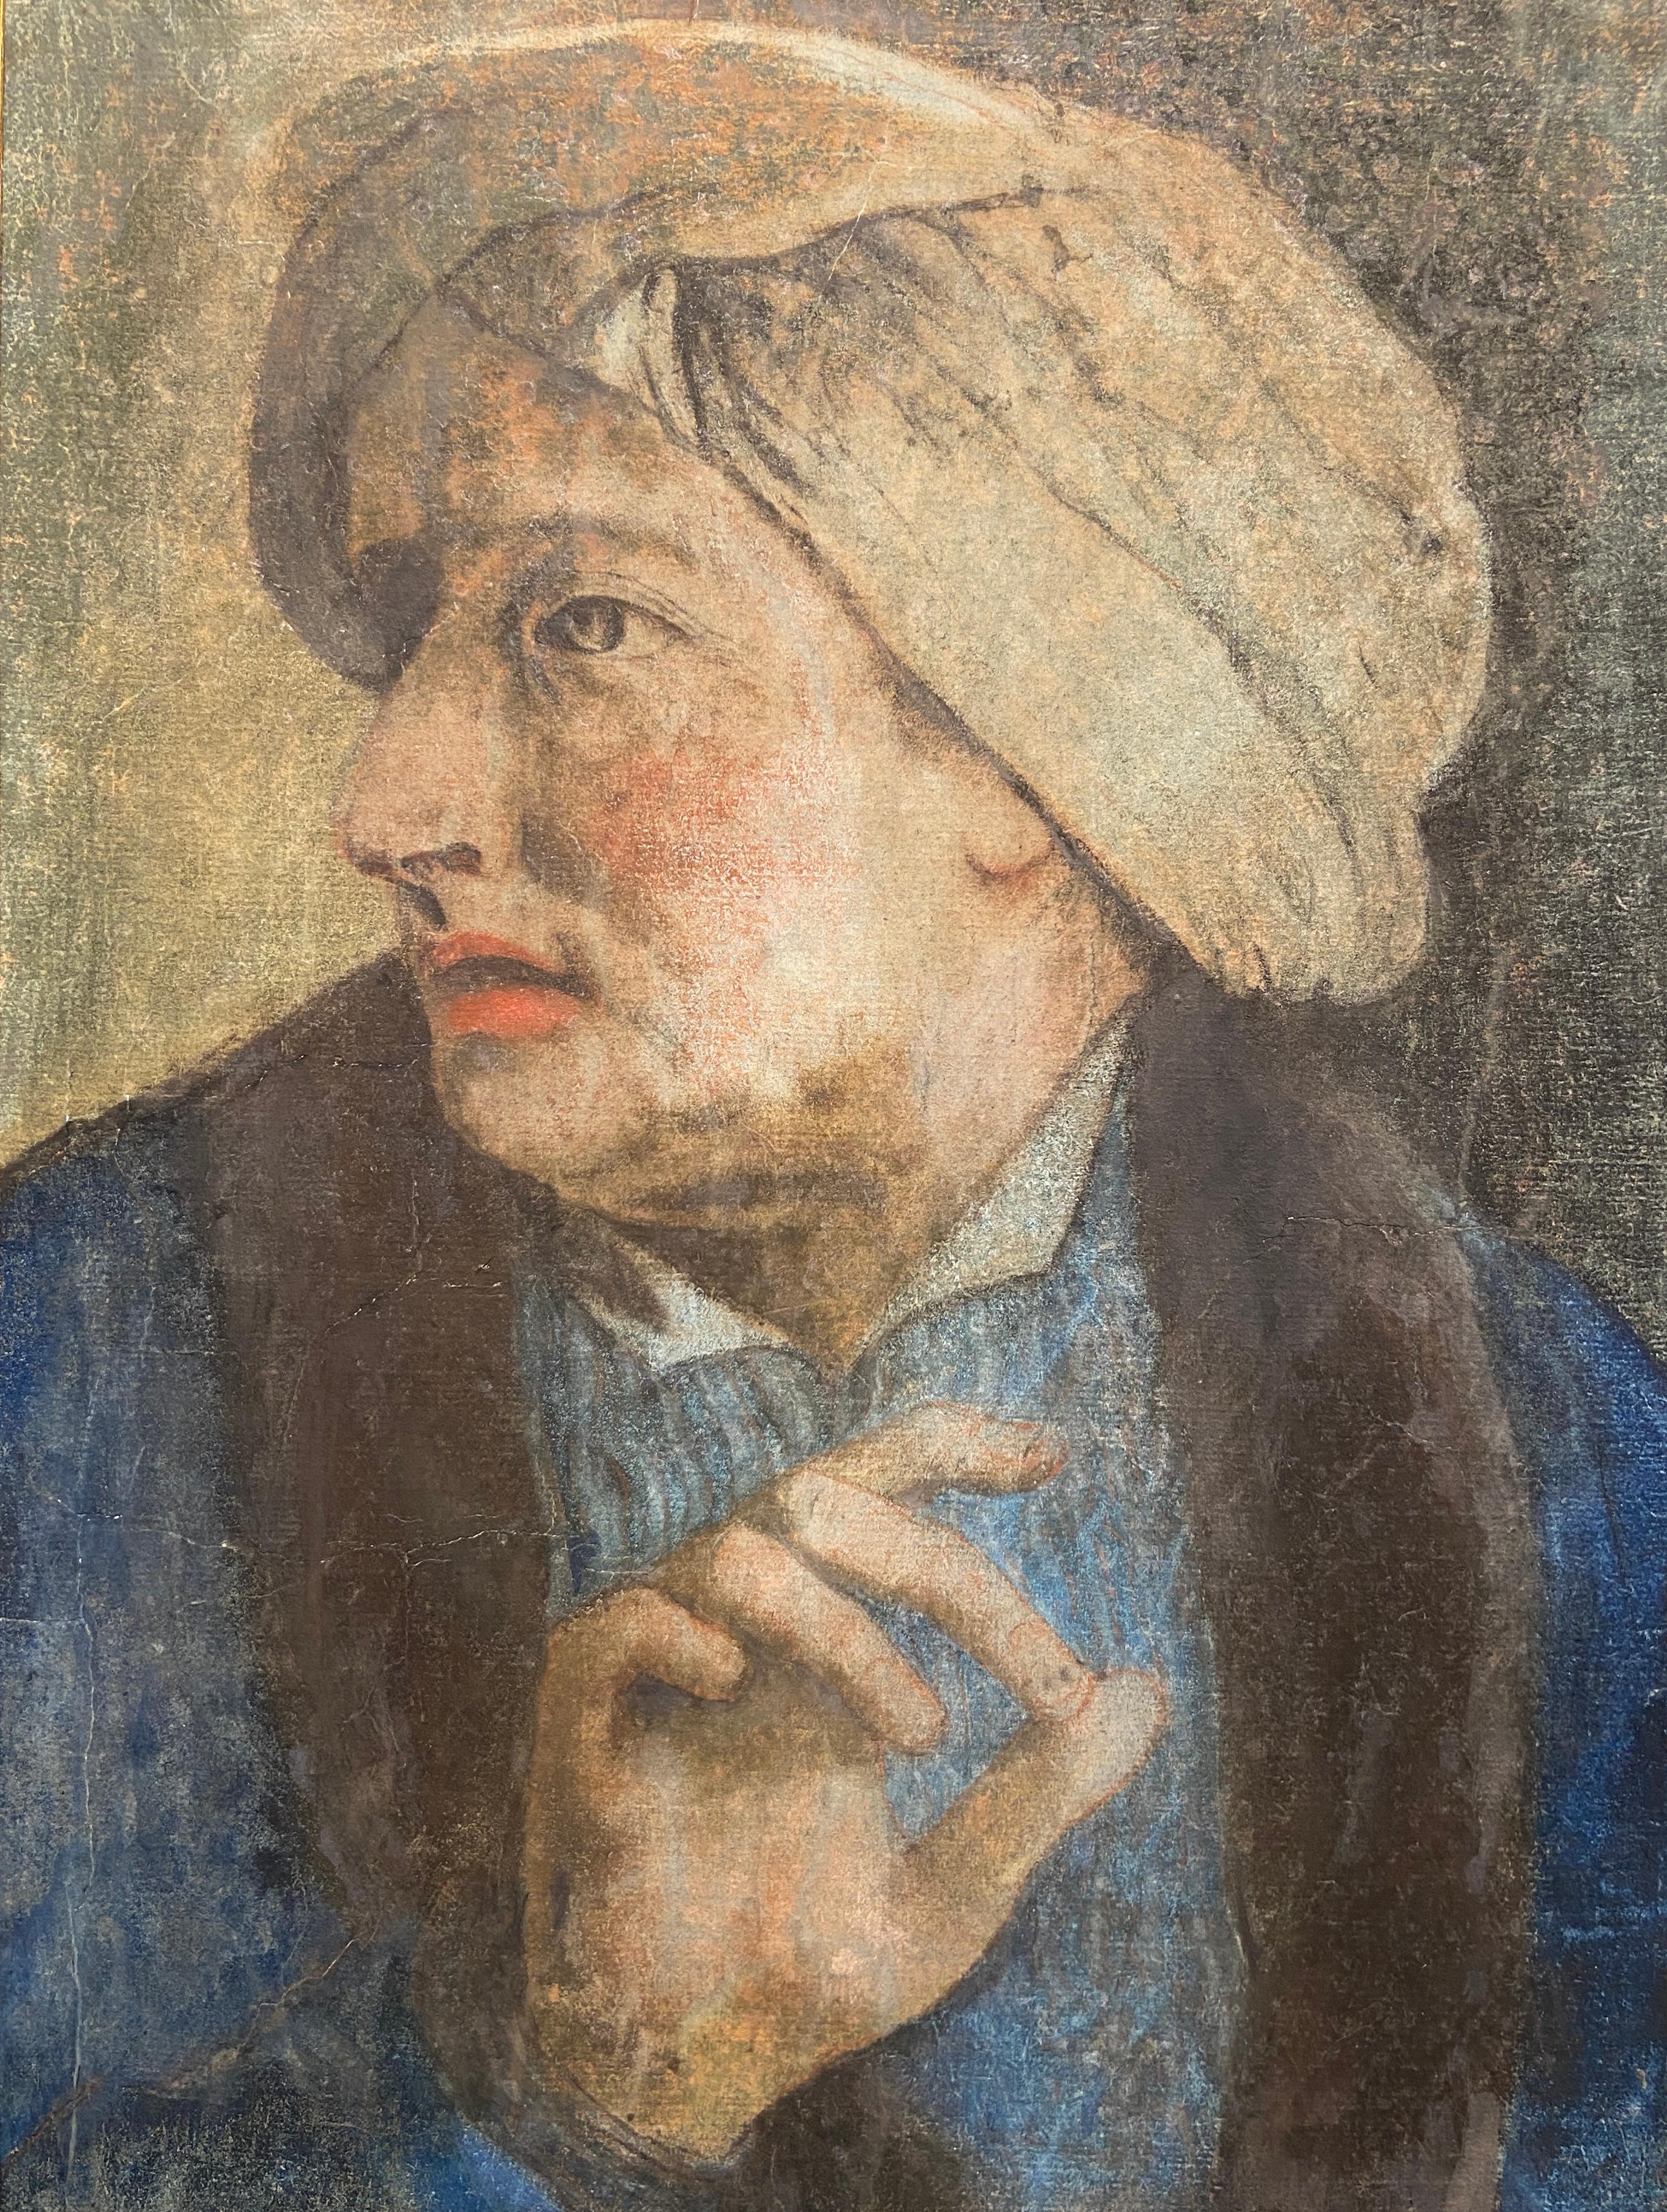 Thomas Frye Portrait – Porträt eines Mannes, der einen Turban trägt, Pastellzeichnung aus dem 18. Jahrhundert